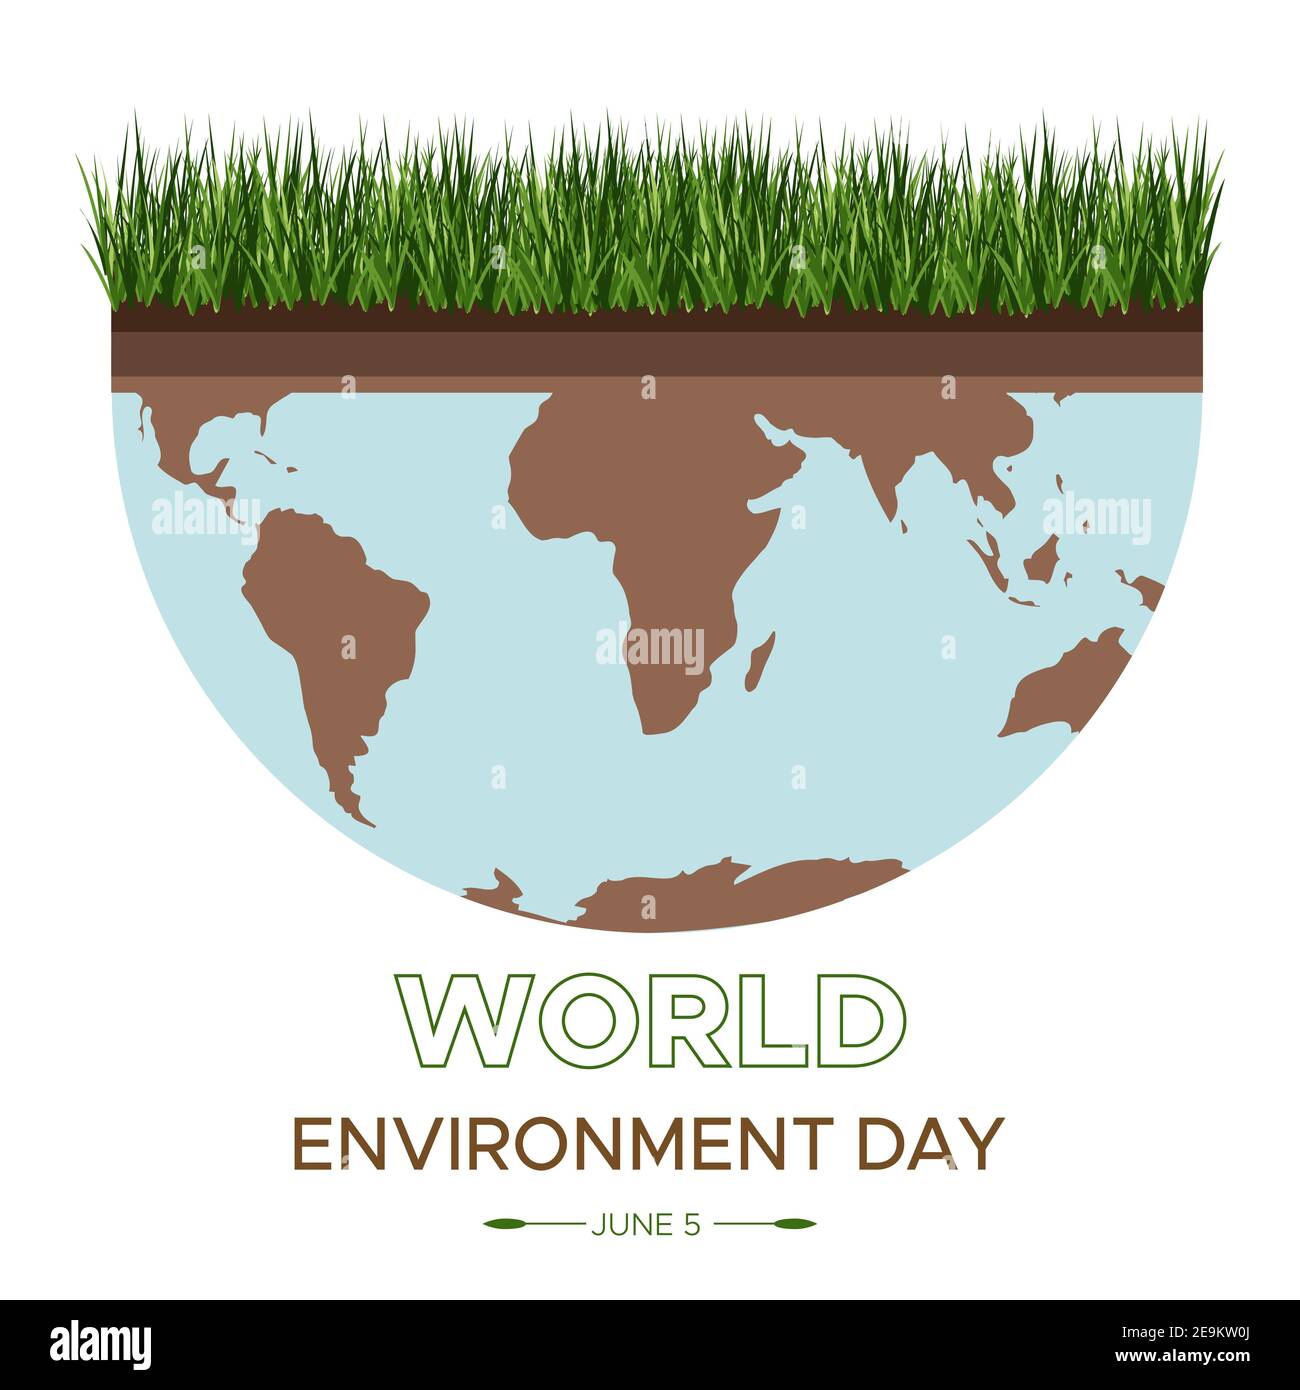 Journée mondiale de l'environnement - illustration vectorielle d'un concept environnemental pour sauver le monde. Isométrique sur le soin de la terre. Convient pour accueillir Banque D'Images